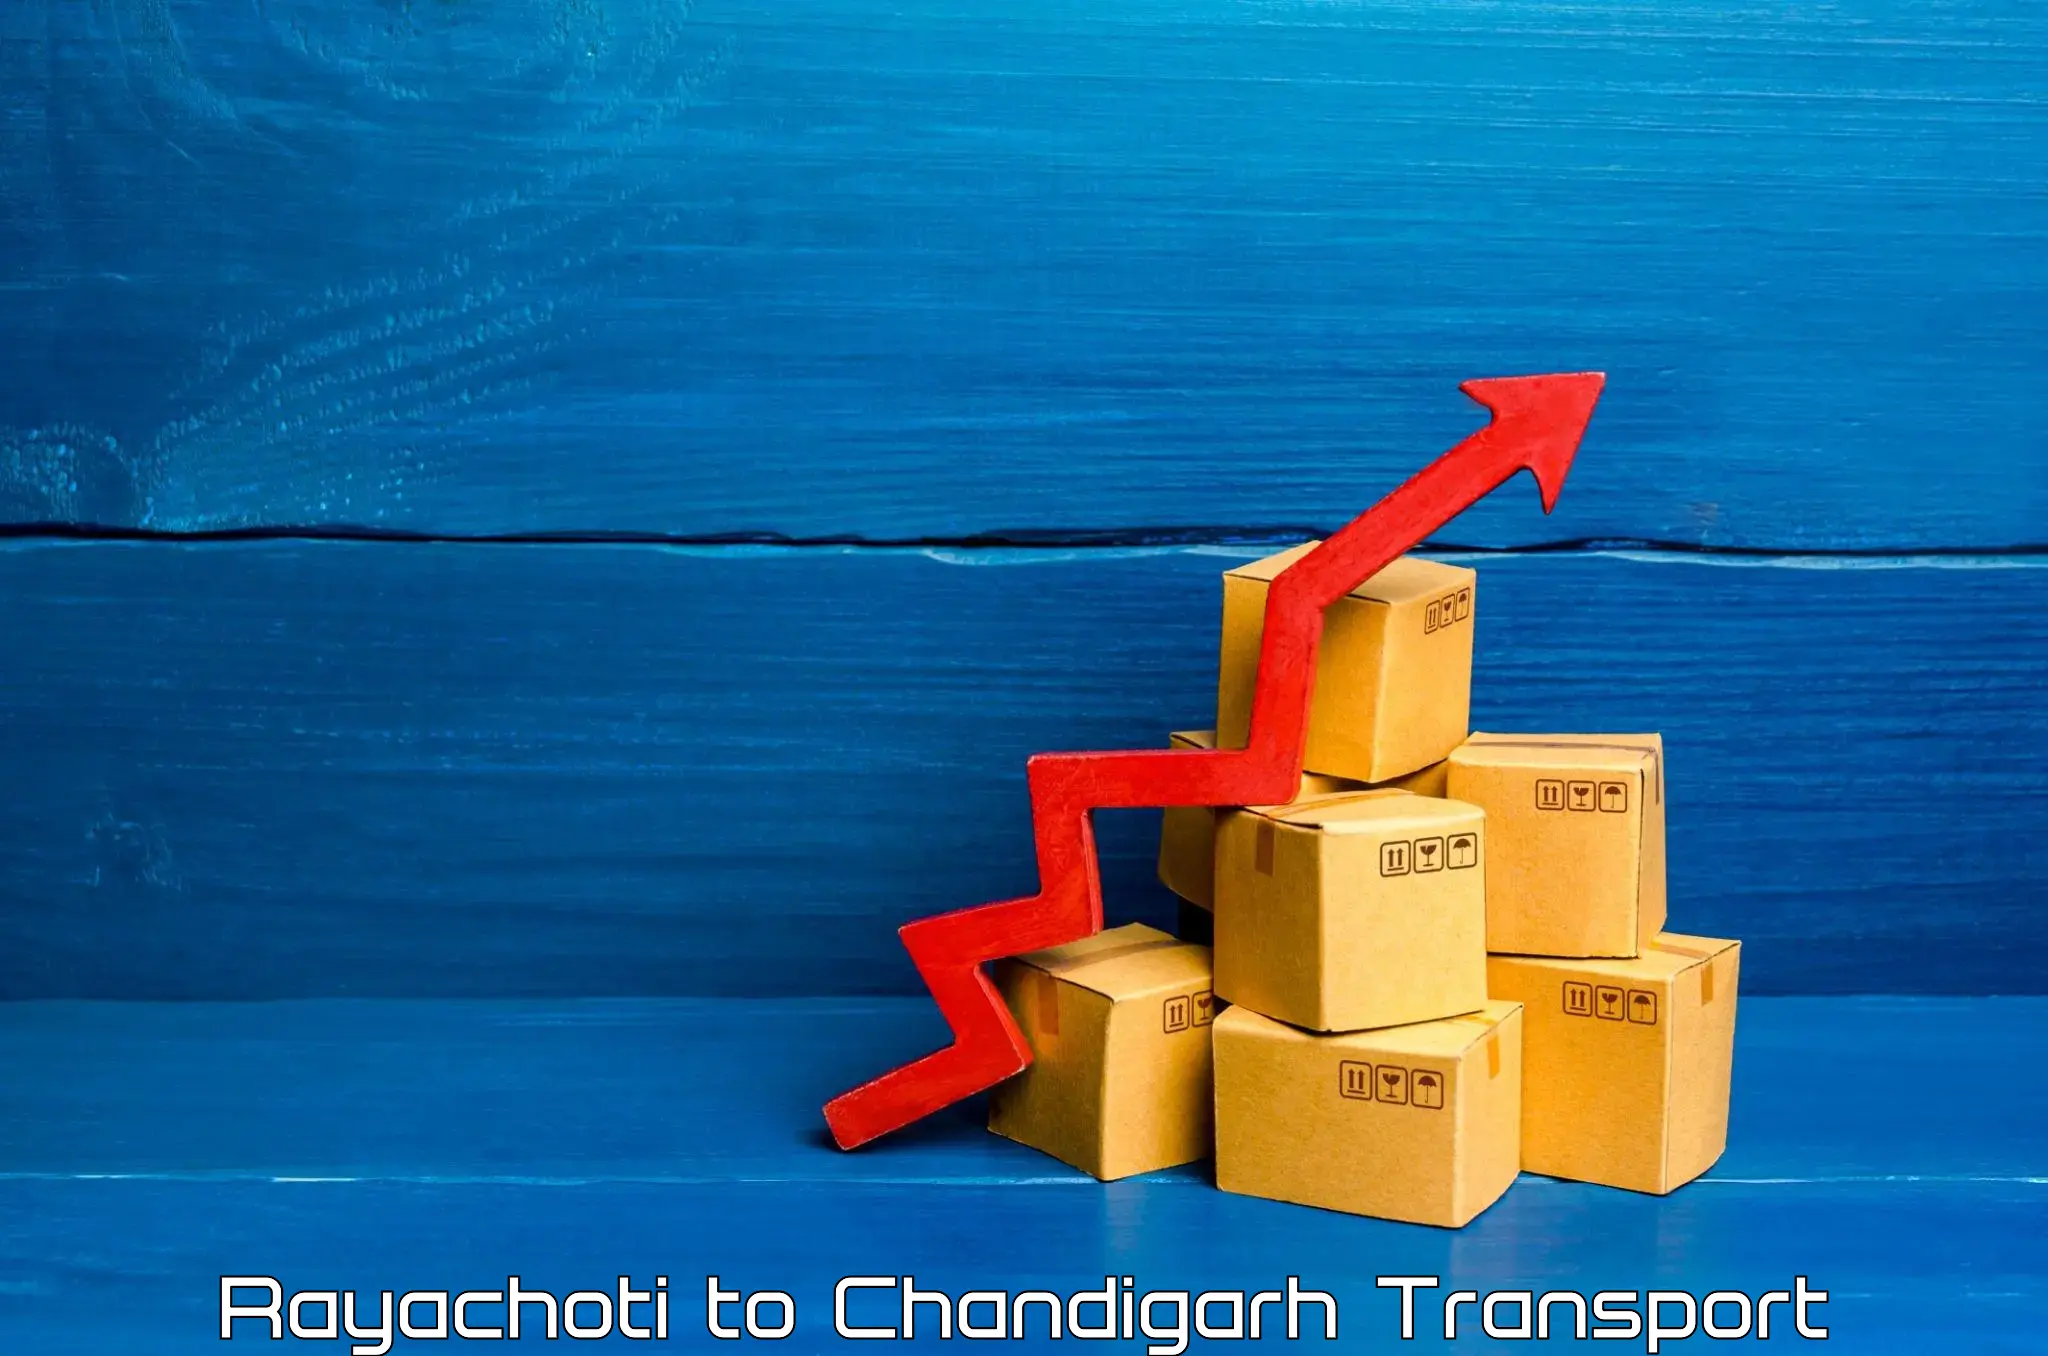 Cycle transportation service Rayachoti to Chandigarh